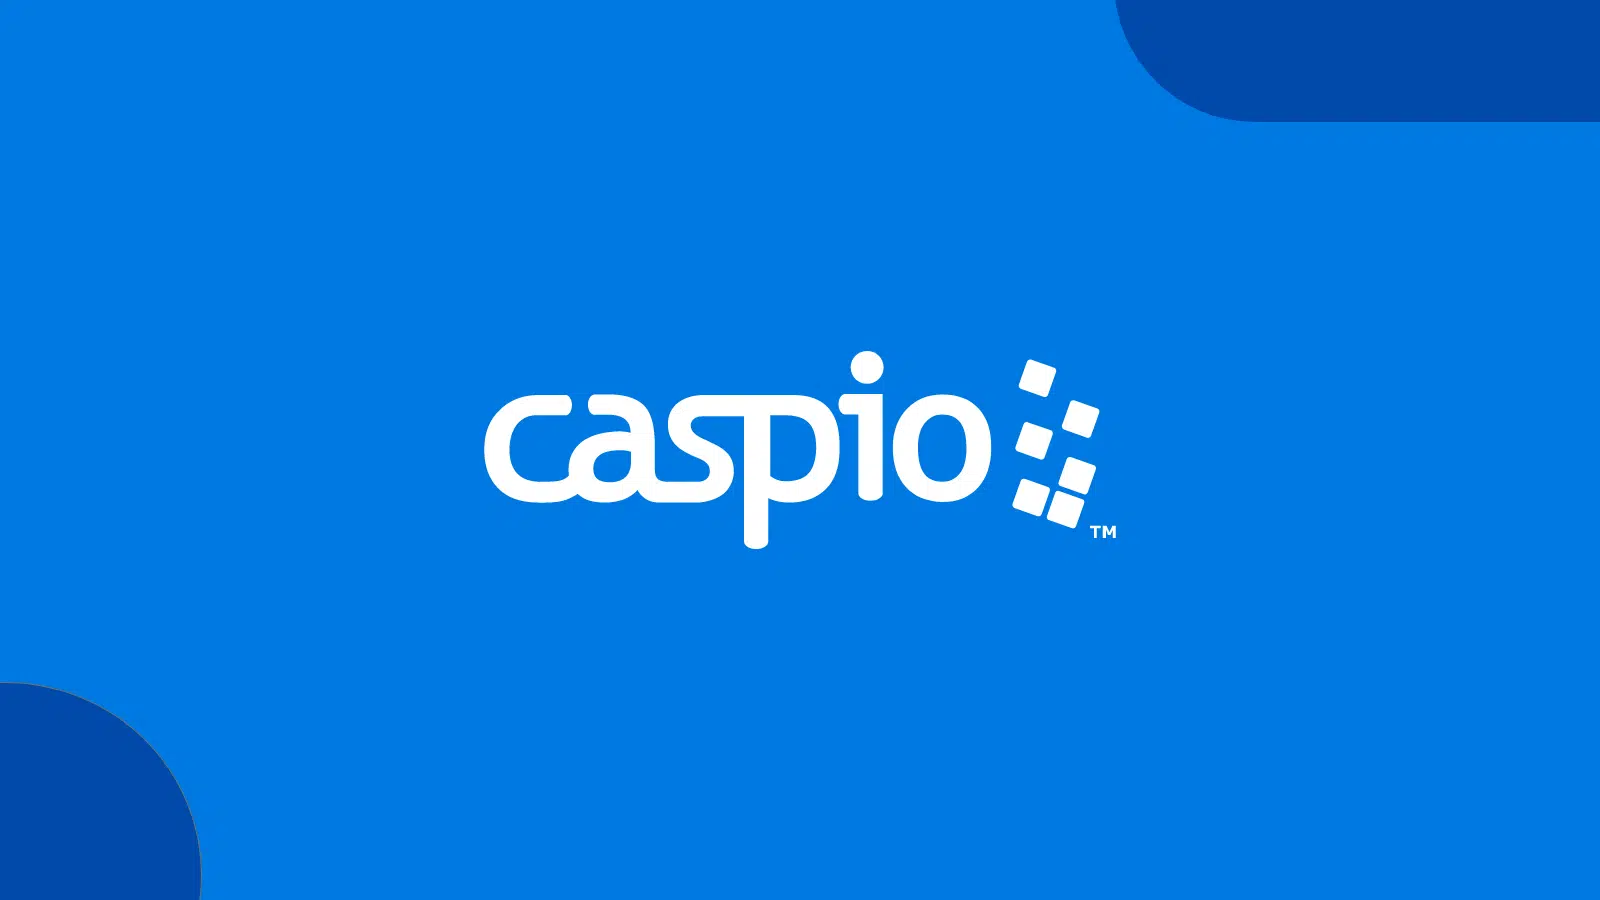 (c) Caspio.com